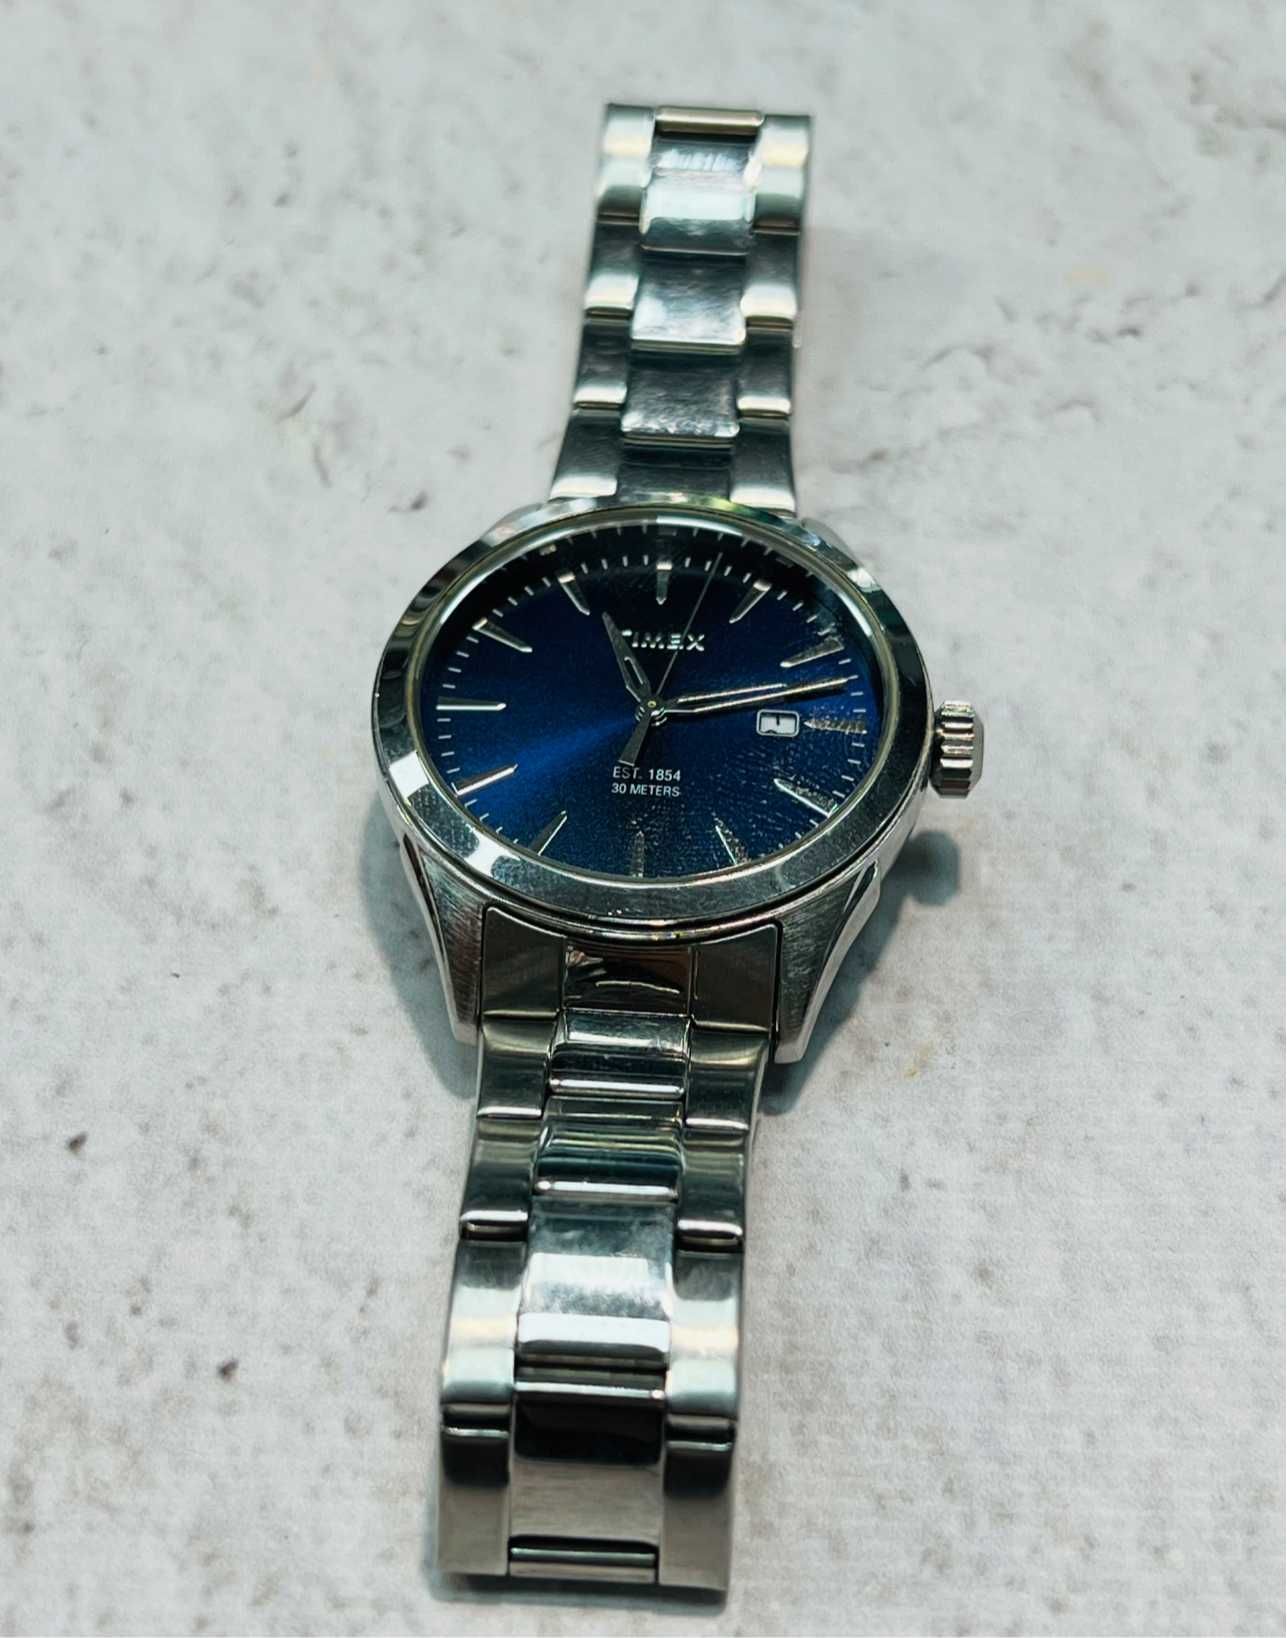 Timex zegarek męski TW2P96800